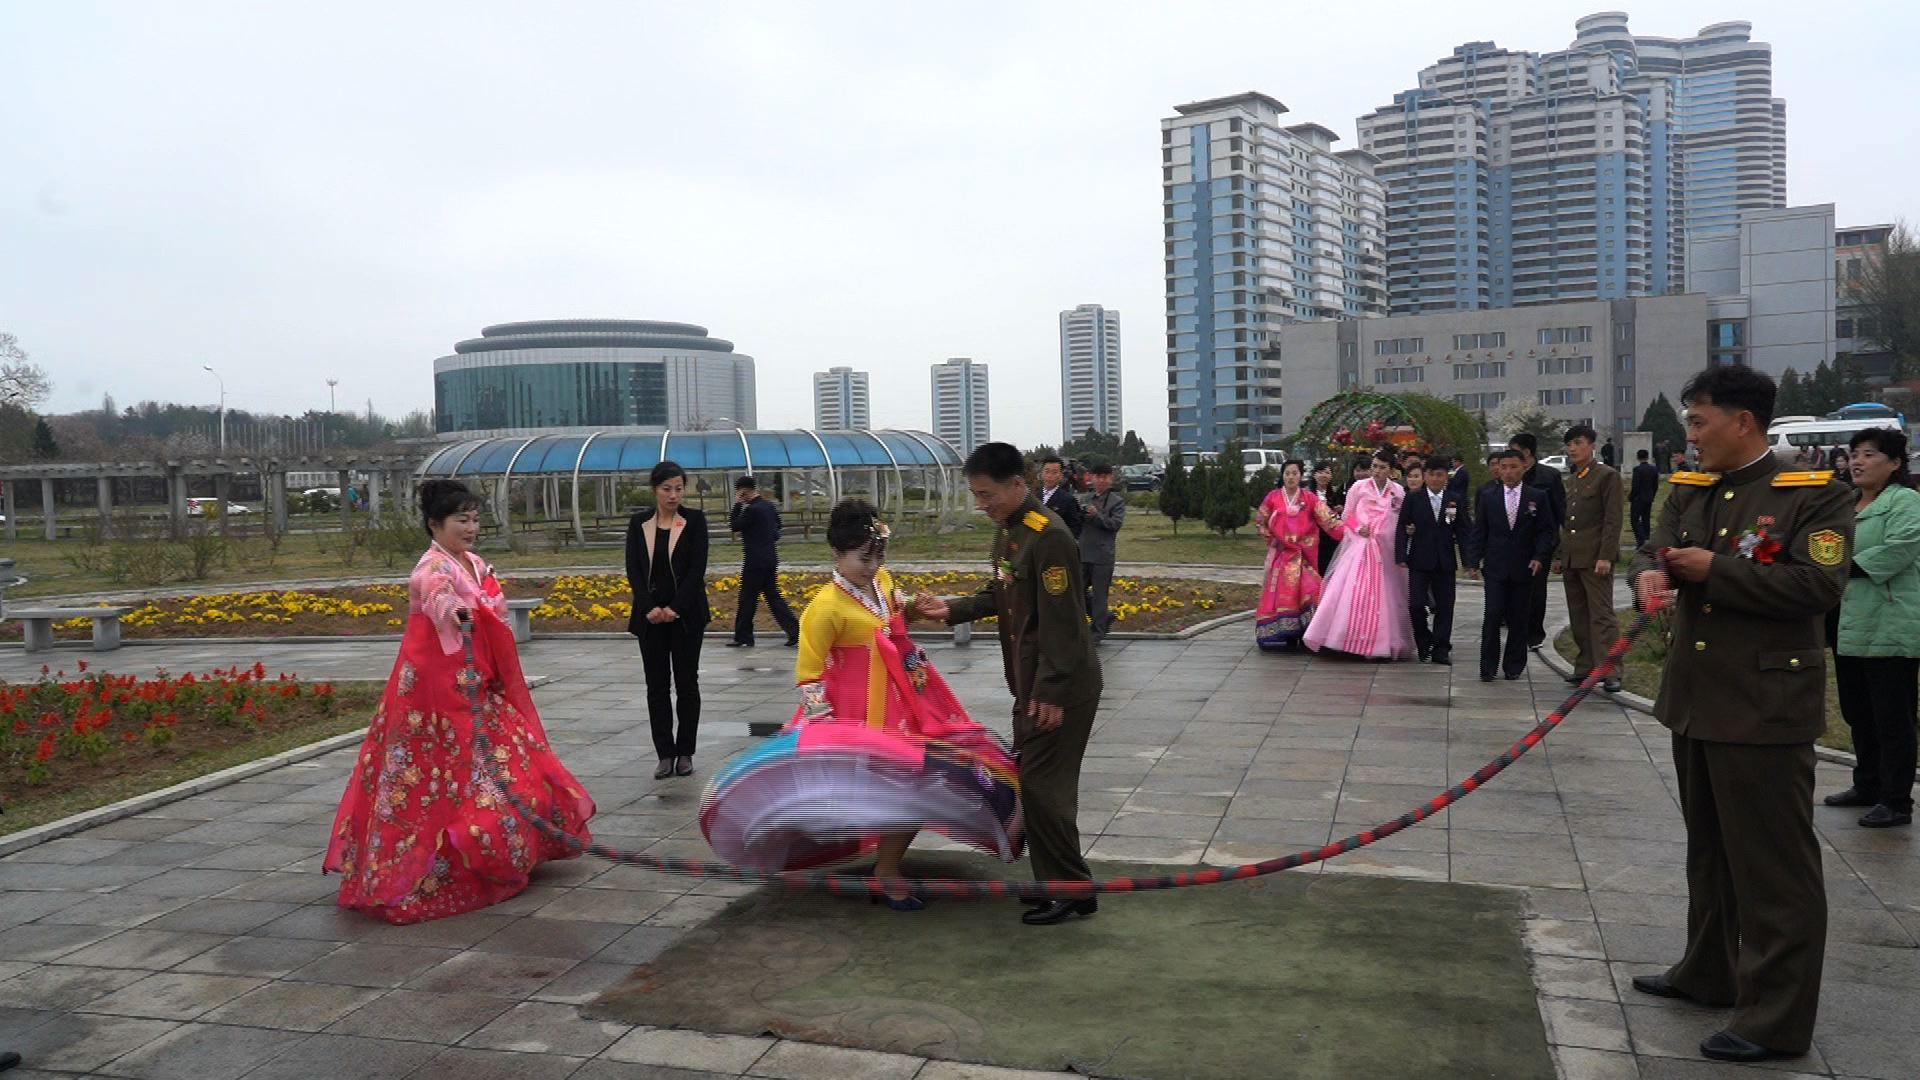 Vjenčanja u Sjevernoj Koreji počinju fotografiranjem, za turiste zabranjeno